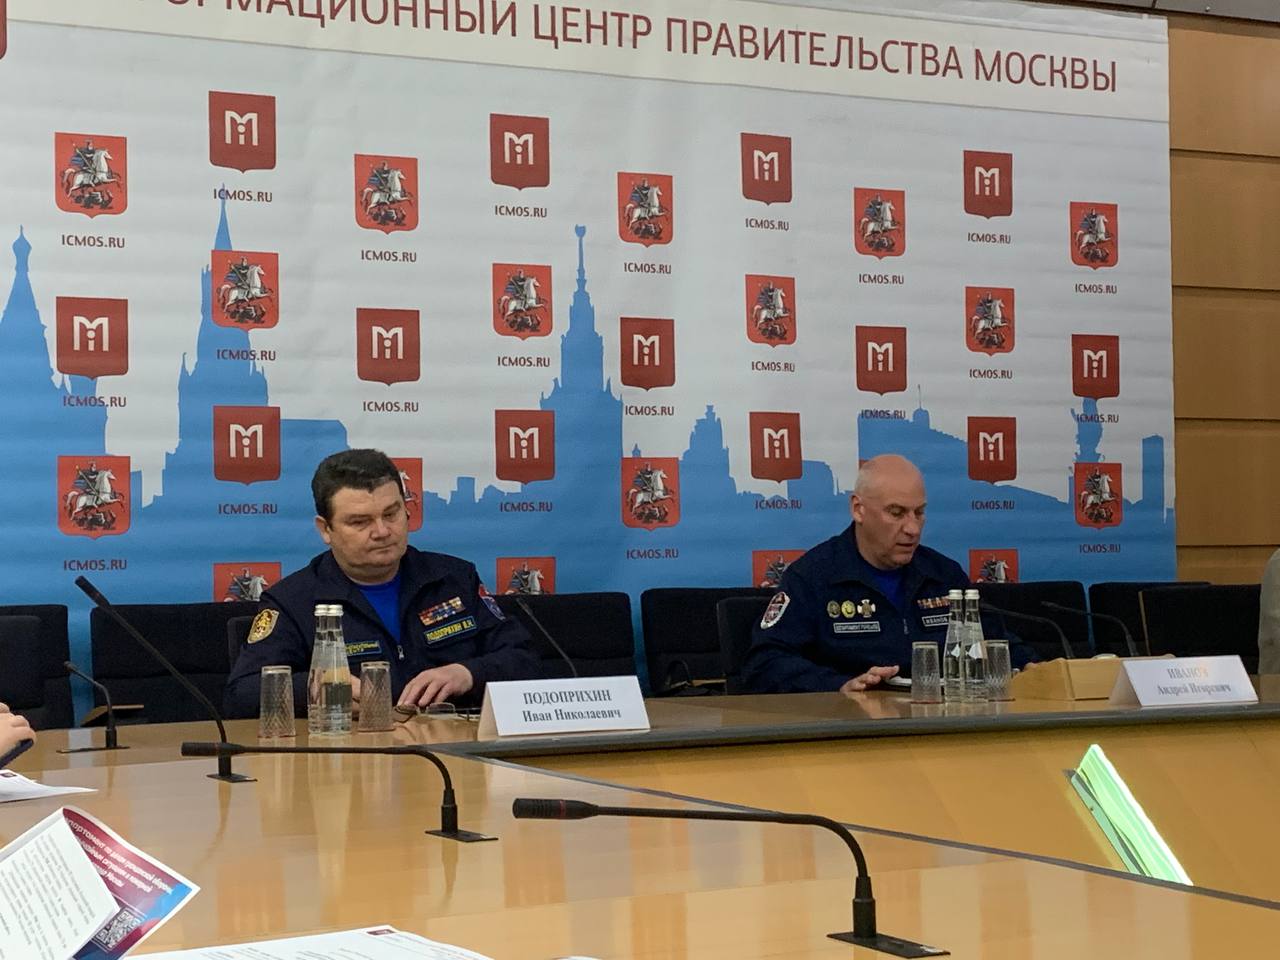 Жители под защитой: спасатели Москвы рассказали об итогах работы пожарной охраны города